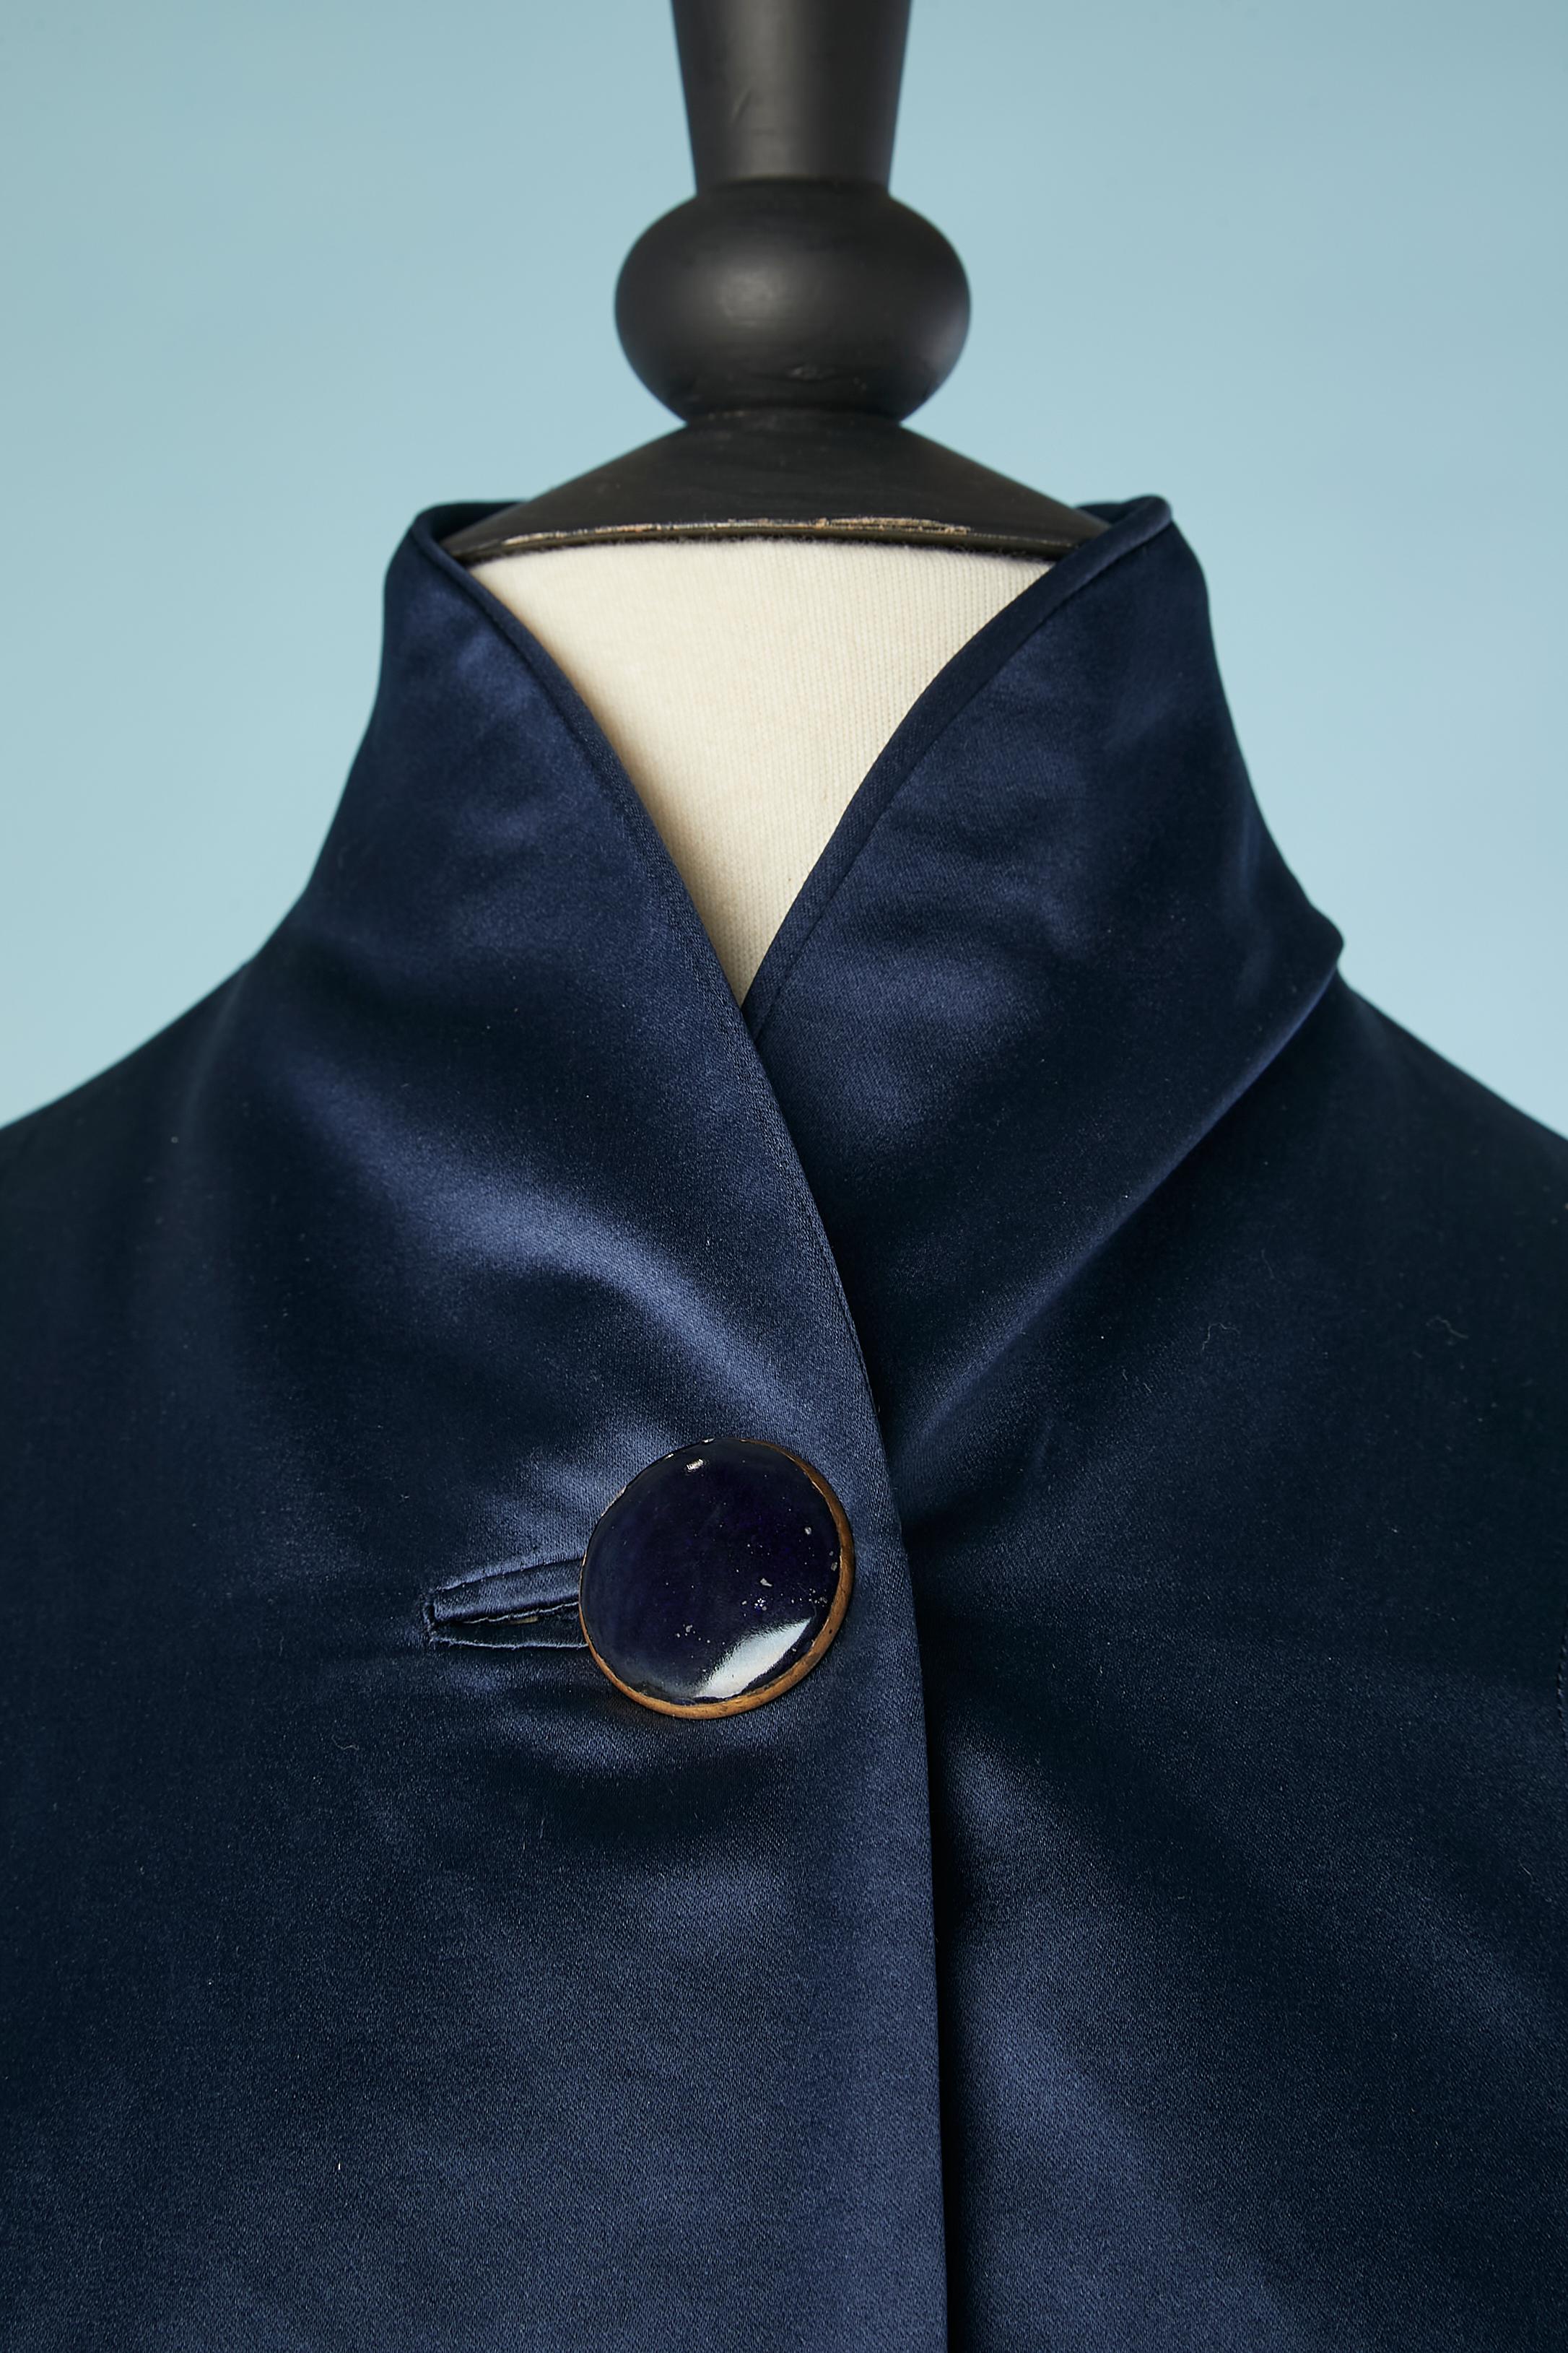 Manteau de soirée  légèrement paddée en satin de soie bleu nuit avec doublure en satin rouge. Un bouton au milieu de l'avant sur le dessus. Poches sur les deux côtés. 
TAILLE 44 (Fr) L 